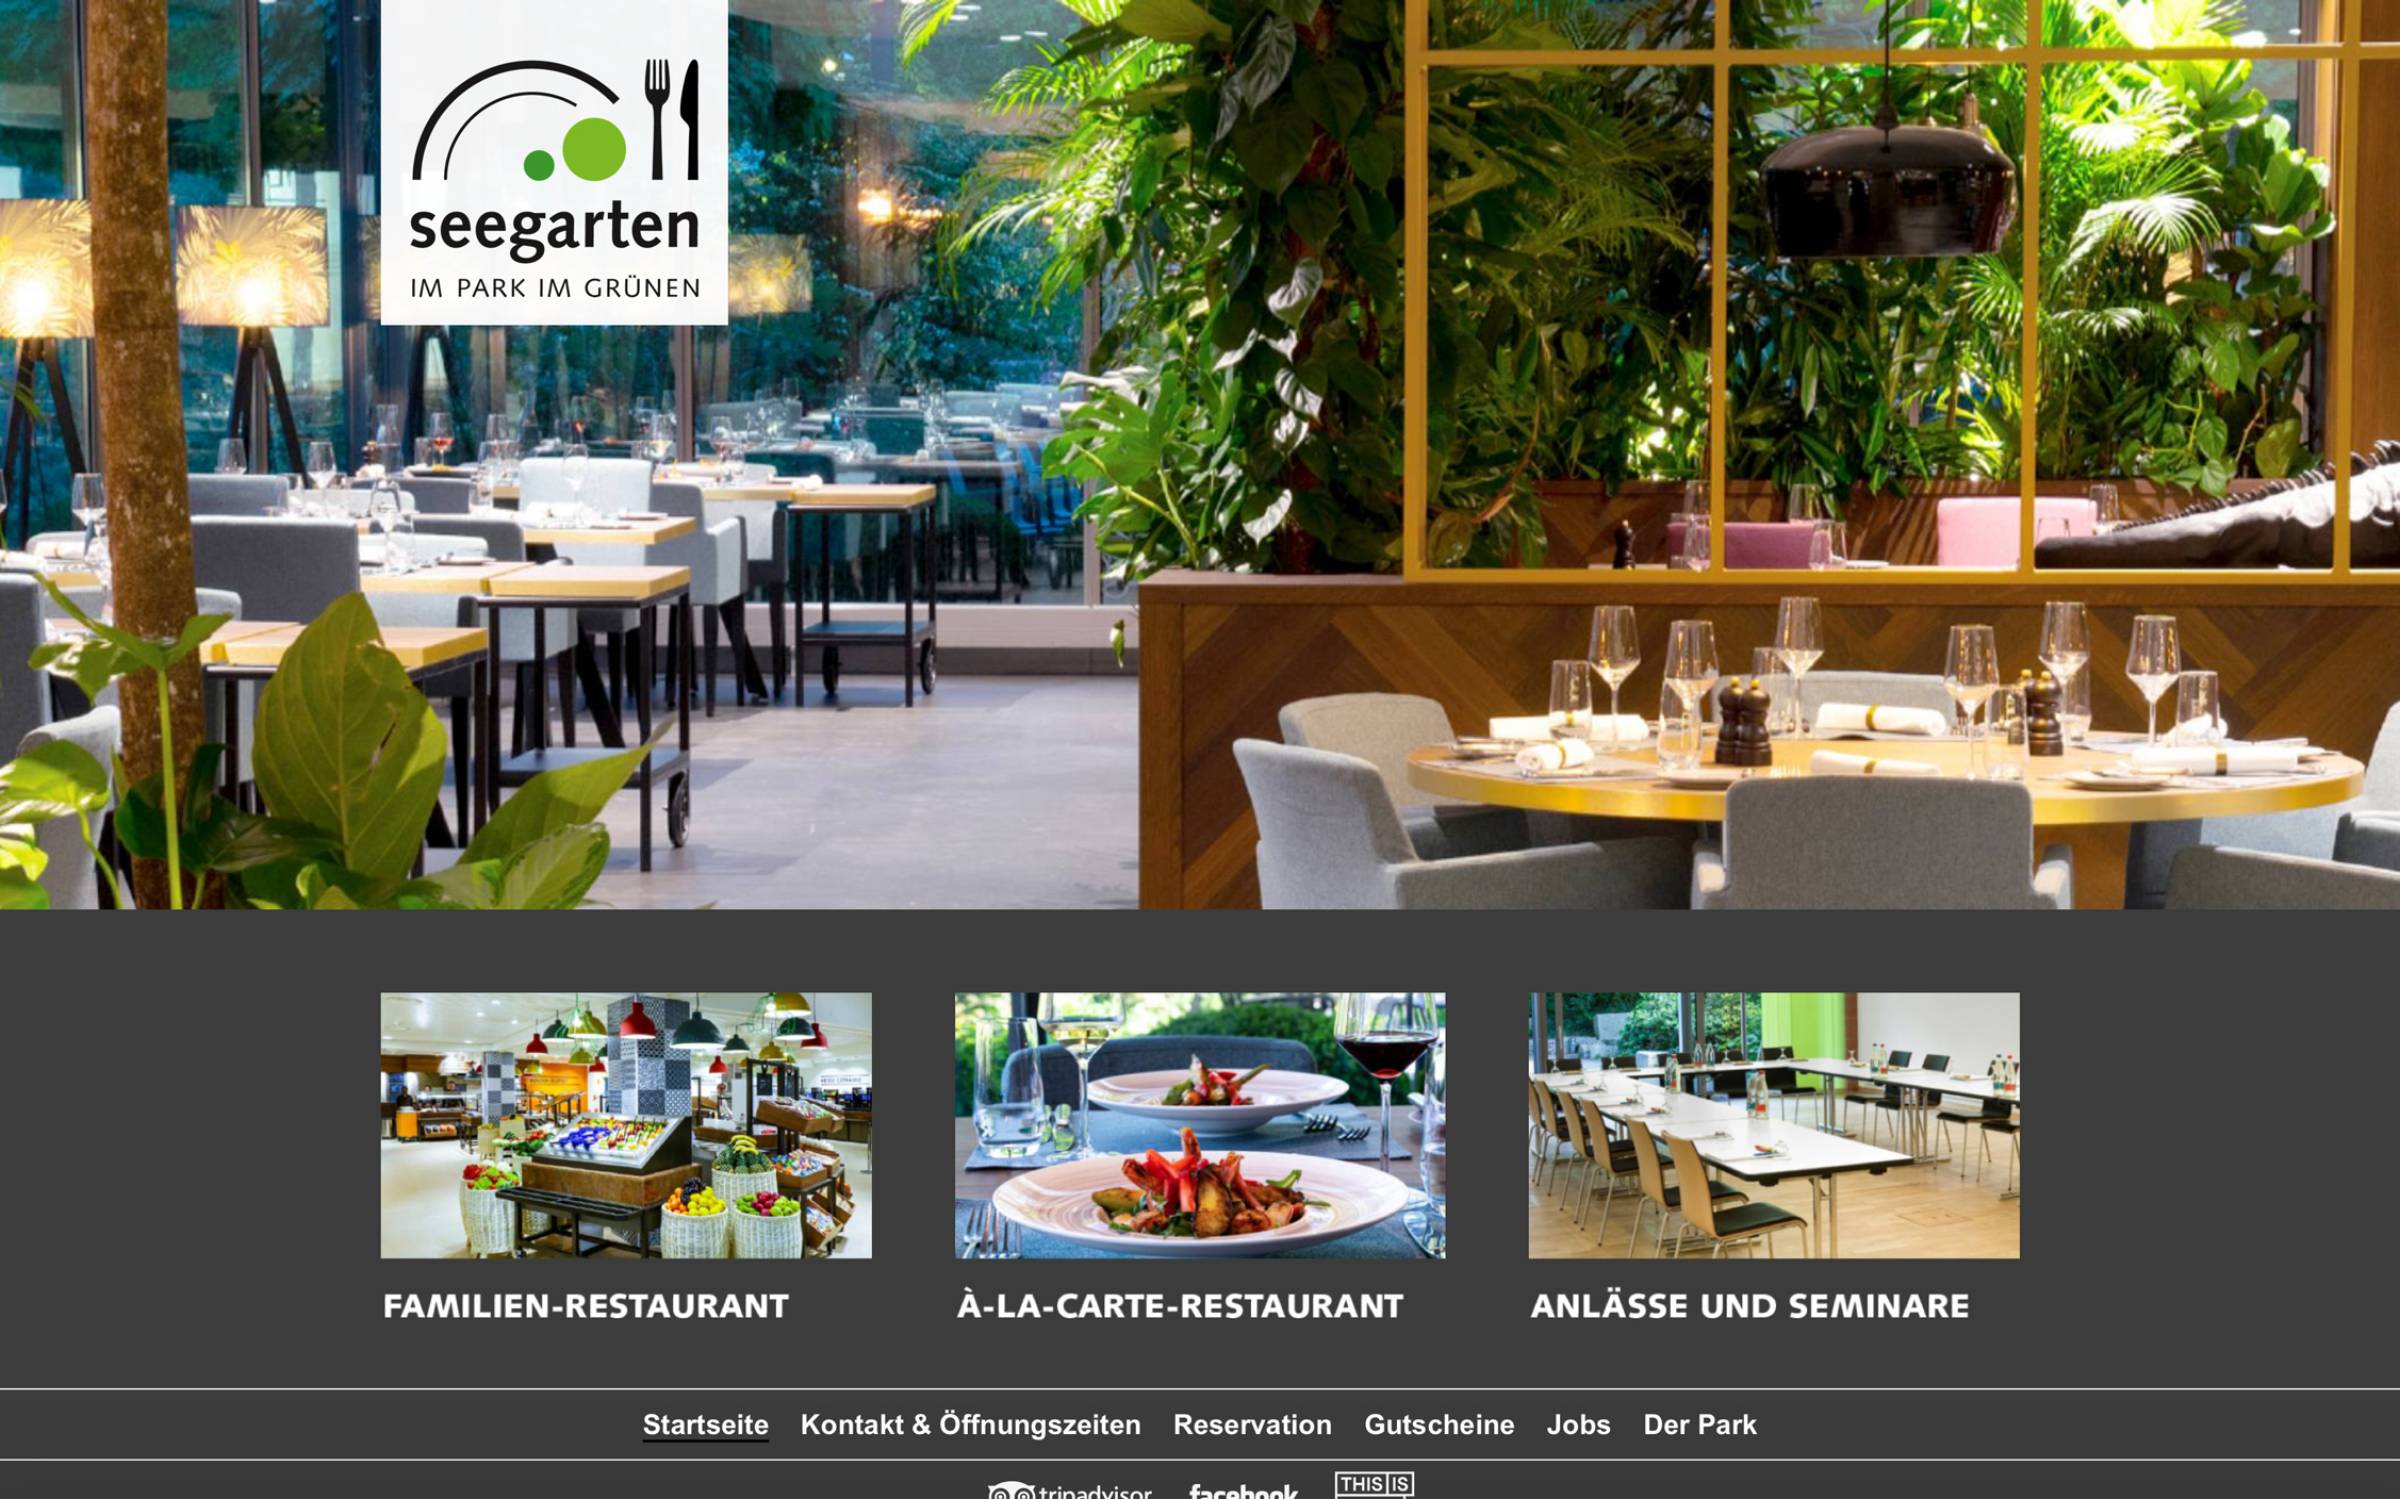 seegarten-restaurant.ch